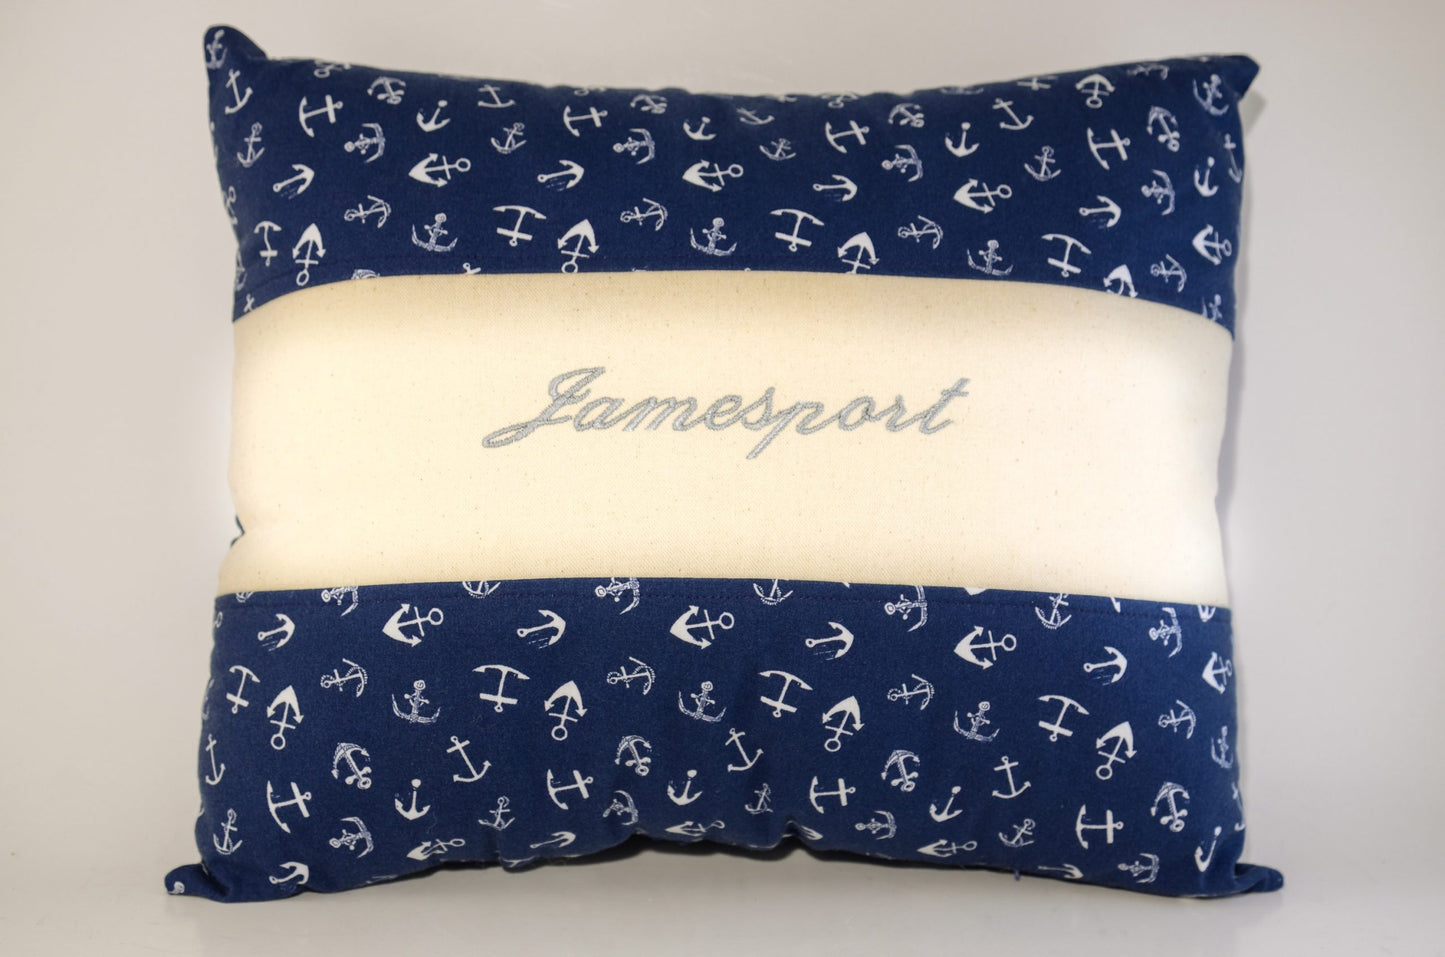 Jamesport Pillow by Christine Hartman